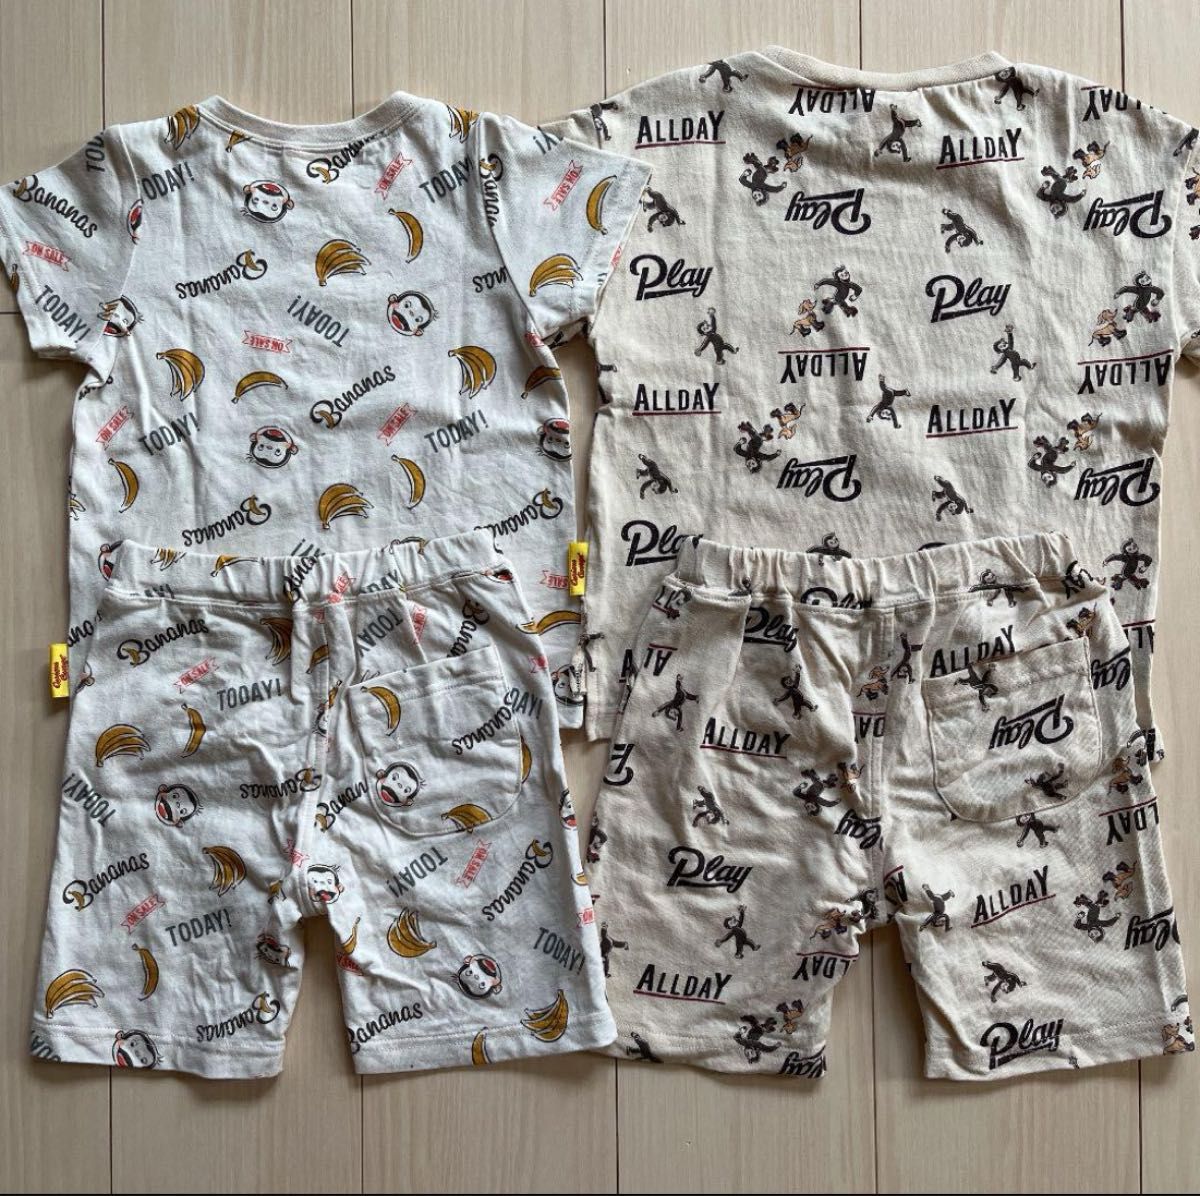 【おさるのジョージ】総柄 セットアップ パジャマ 2セット 100 Tシャツ ハーフパンツ 猿 サル 動物 バナナ キャラクター